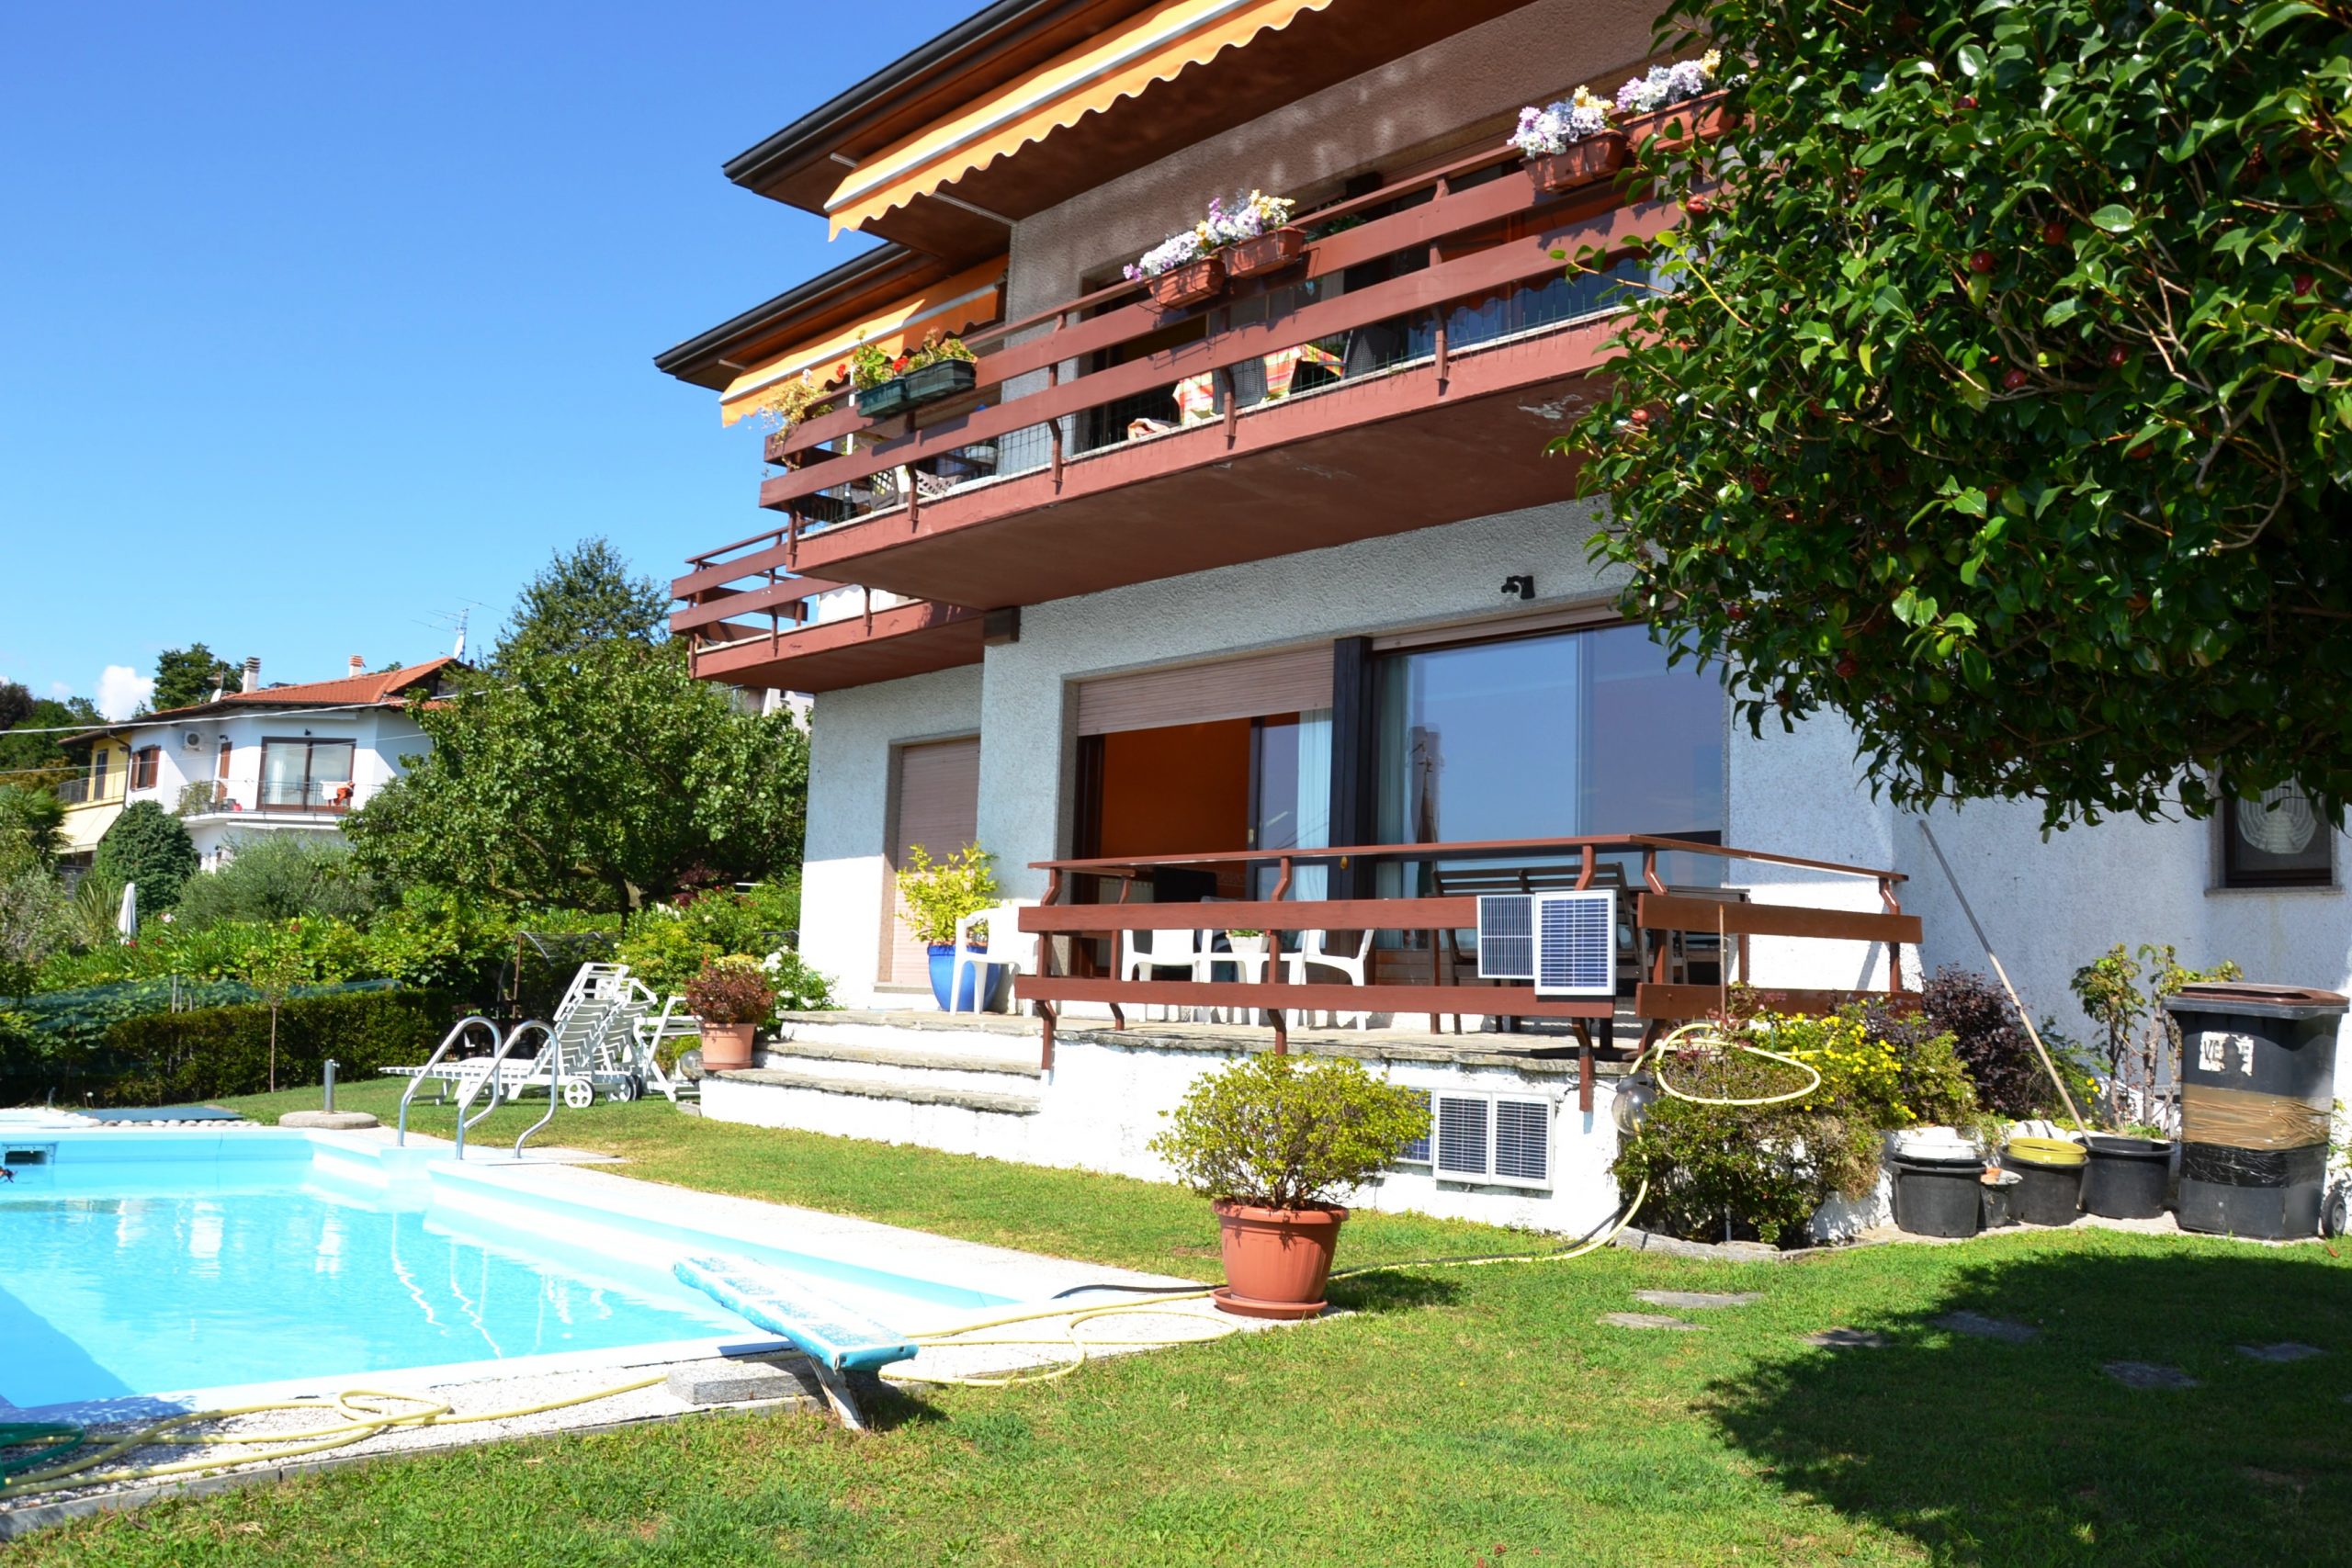 Foto Villa bifamigliare con vista lago e piscina, Arizzano